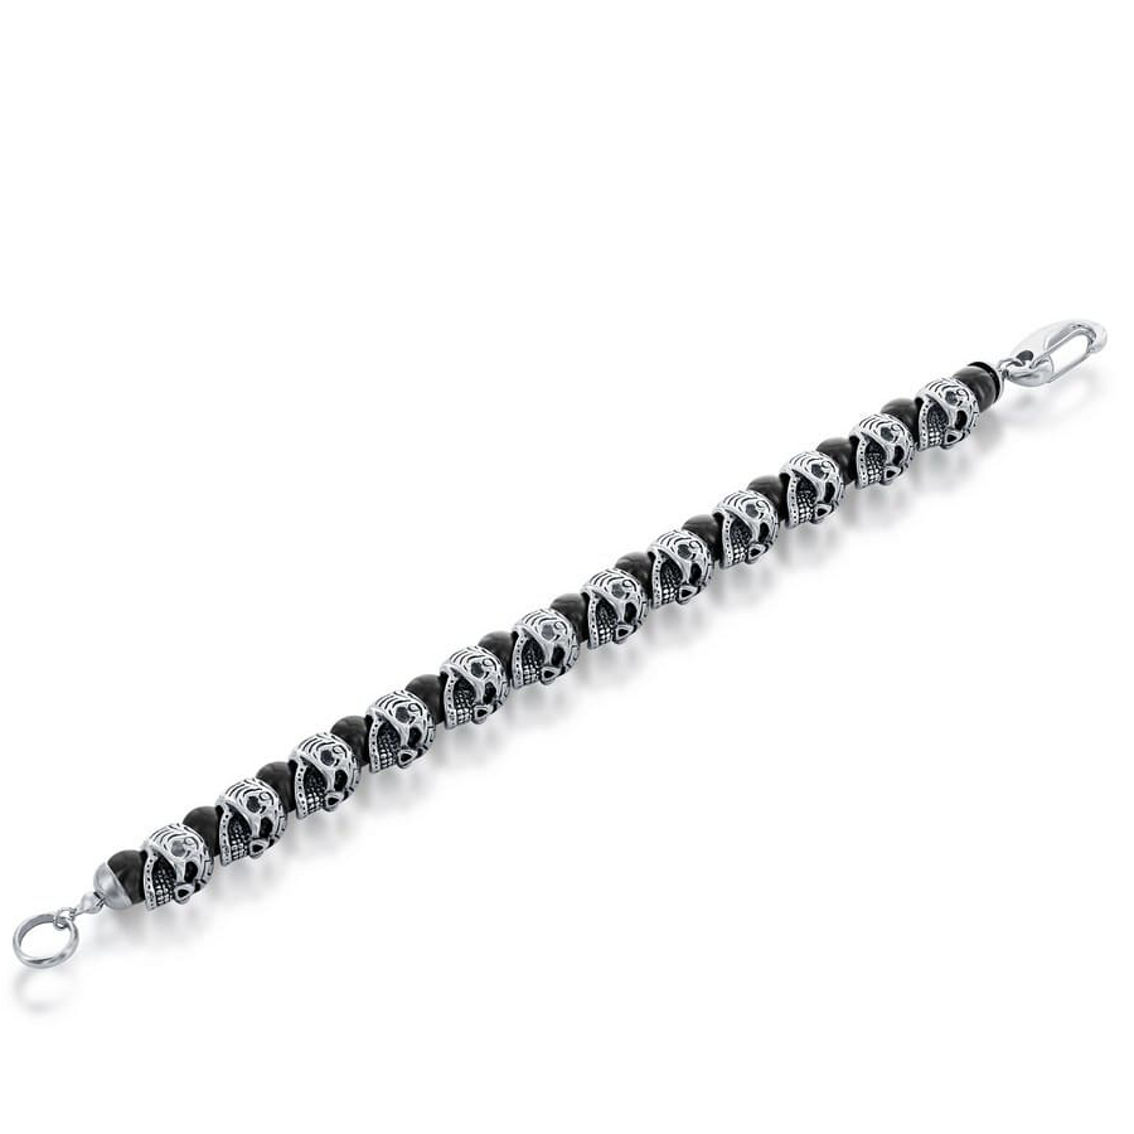 Metallo Stainless Steel Genuine Onyx Skull Bracelet - Image 2 of 4